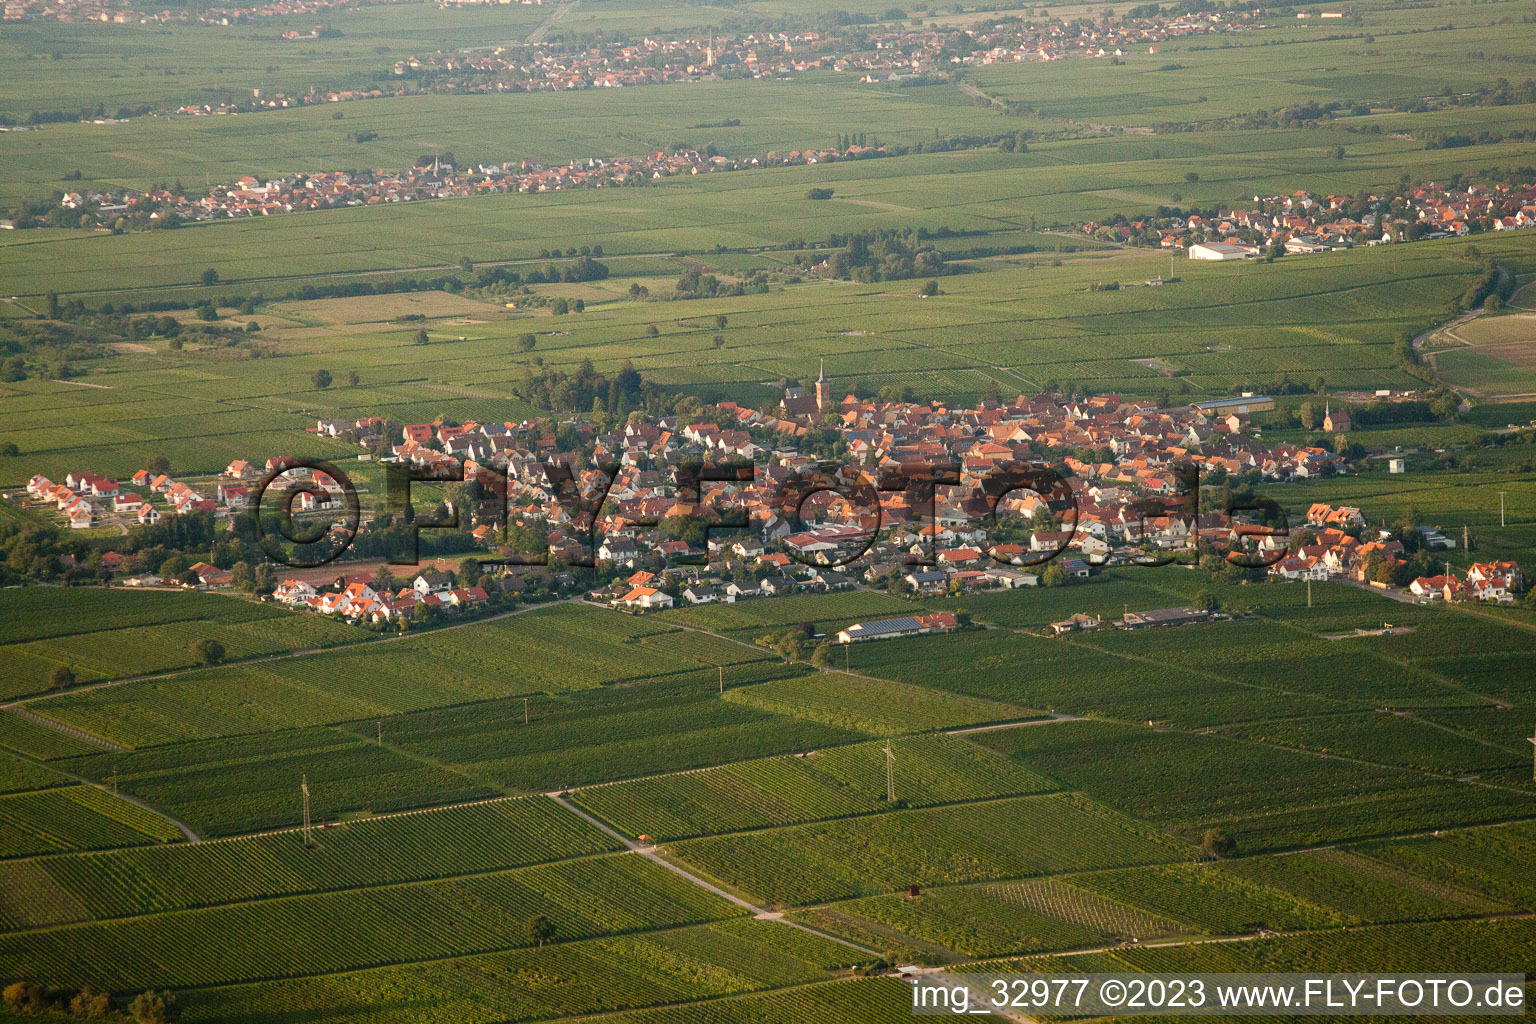 Ortsteil Nußdorf in Landau in der Pfalz im Bundesland Rheinland-Pfalz, Deutschland von der Drohne aus gesehen